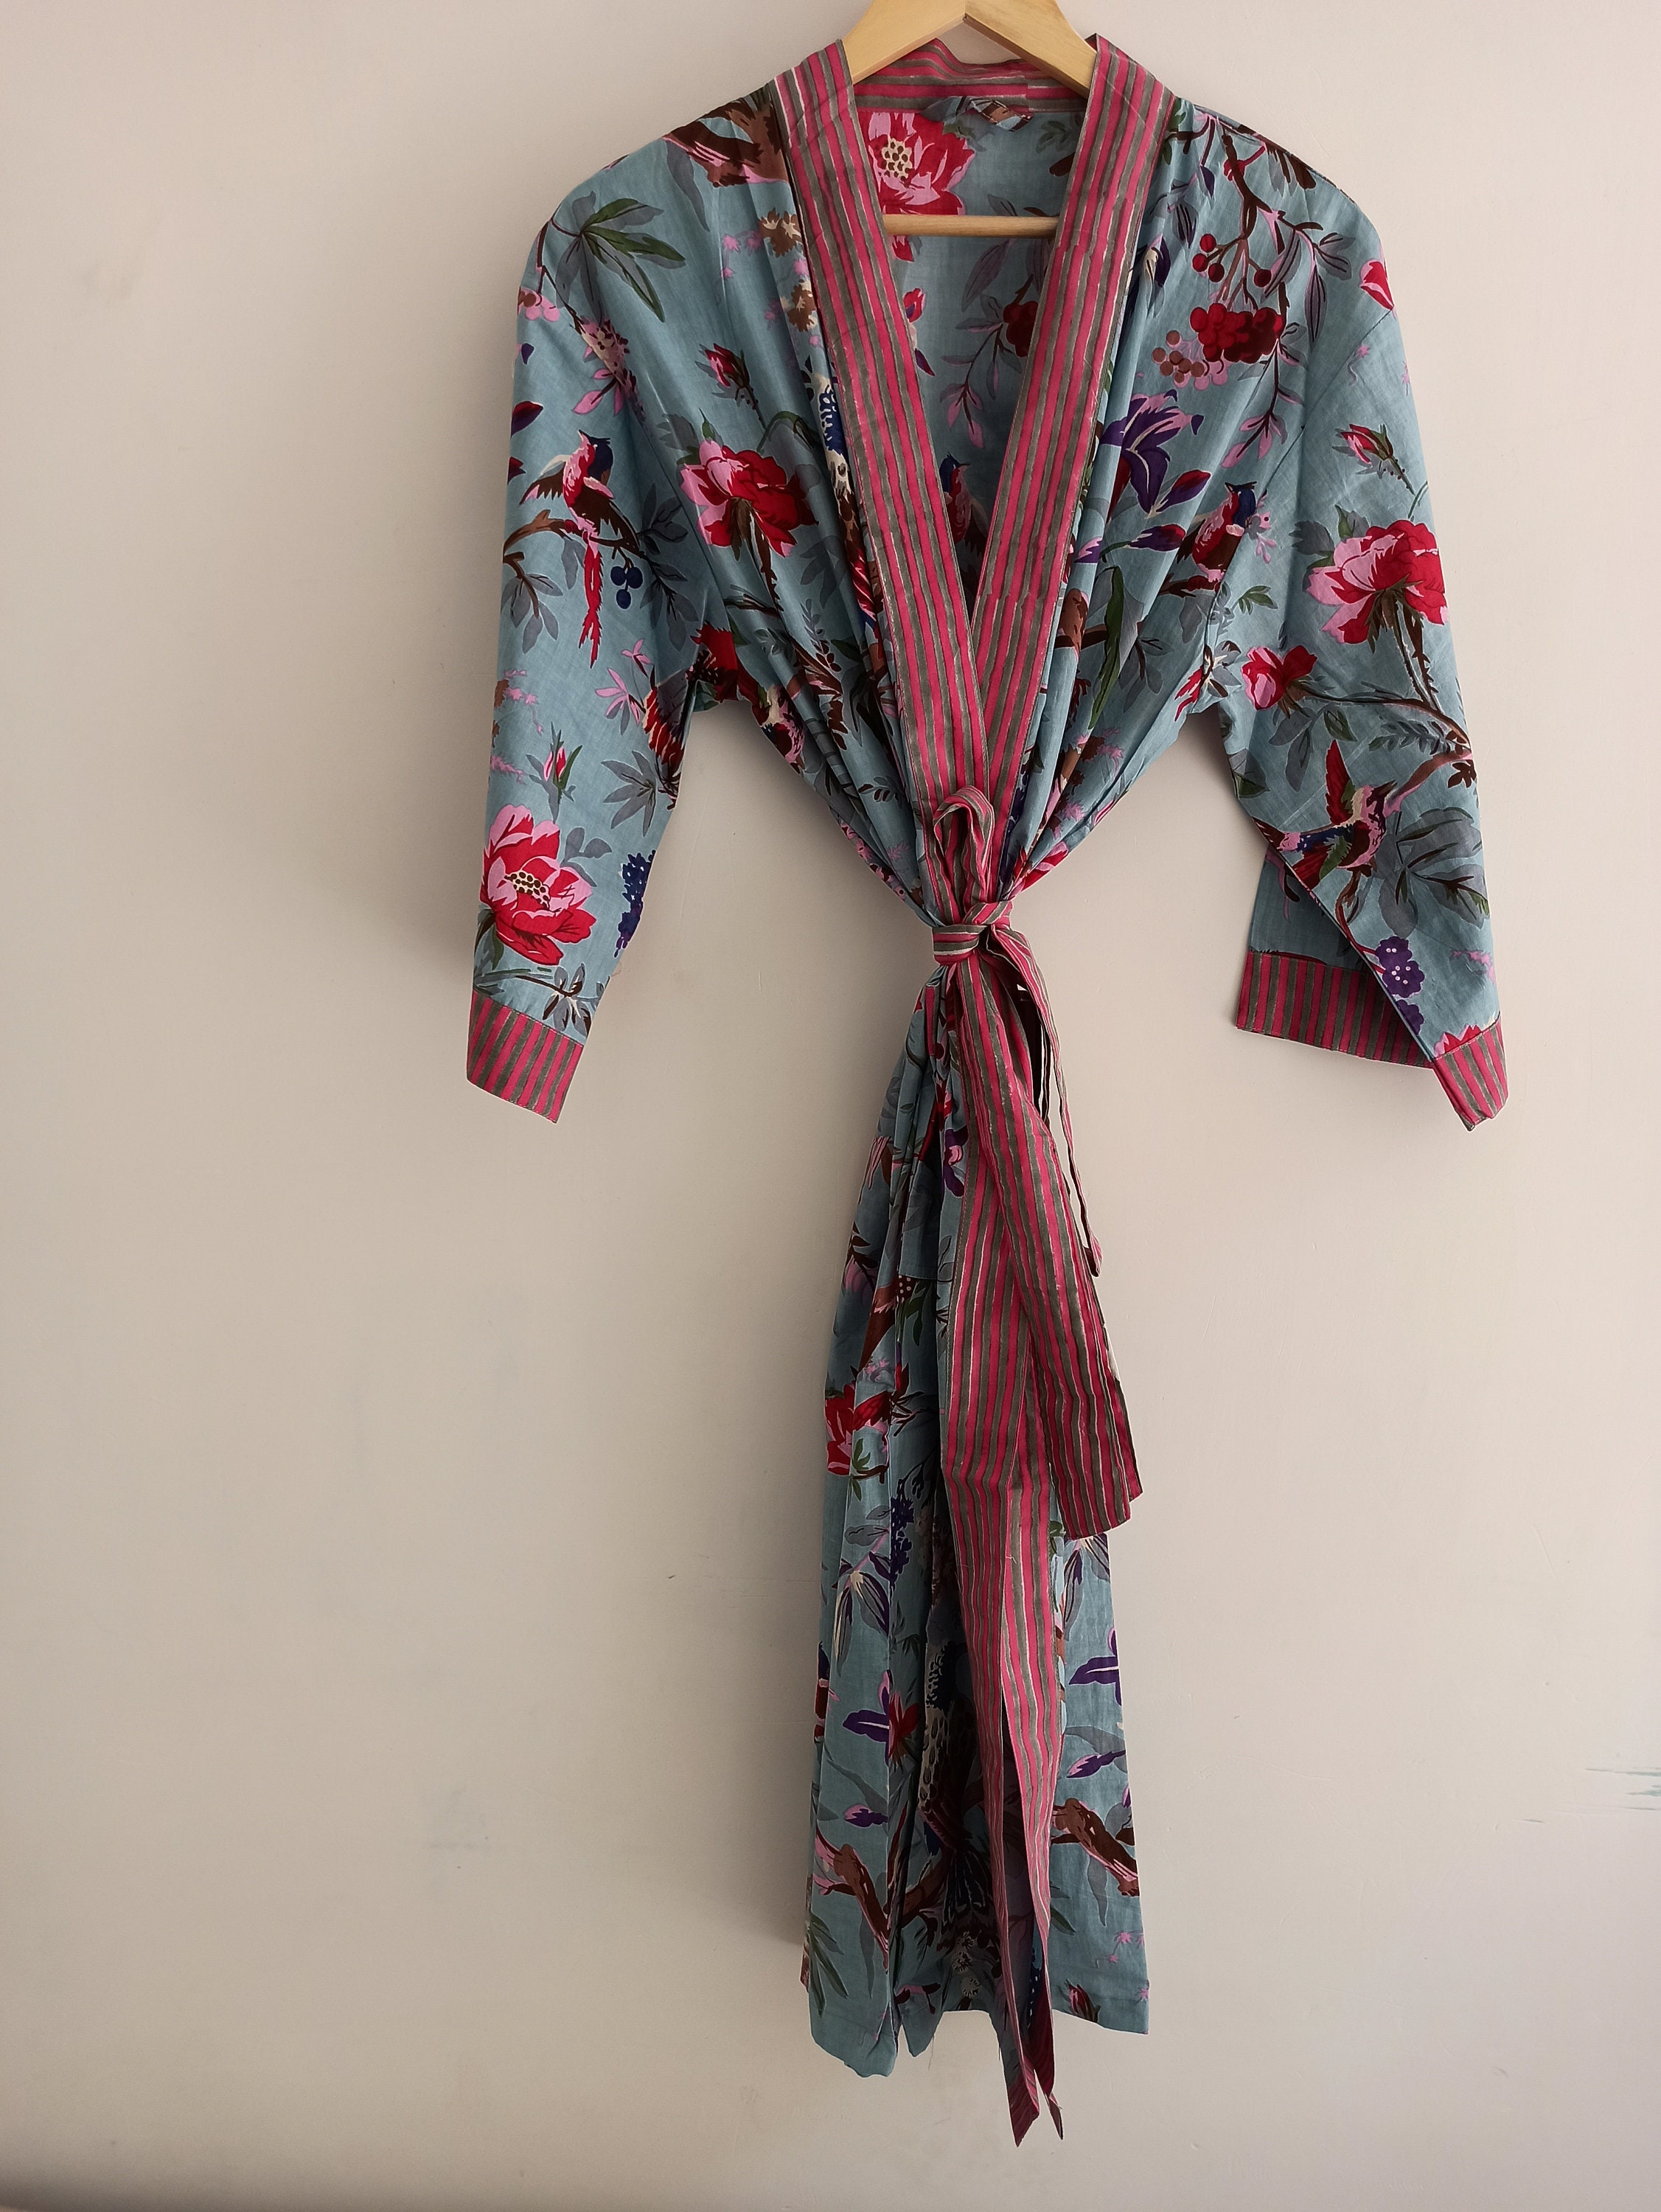 100% Cotton kimono Robes Pure cotton Kimono Cotton Kimono | Etsy